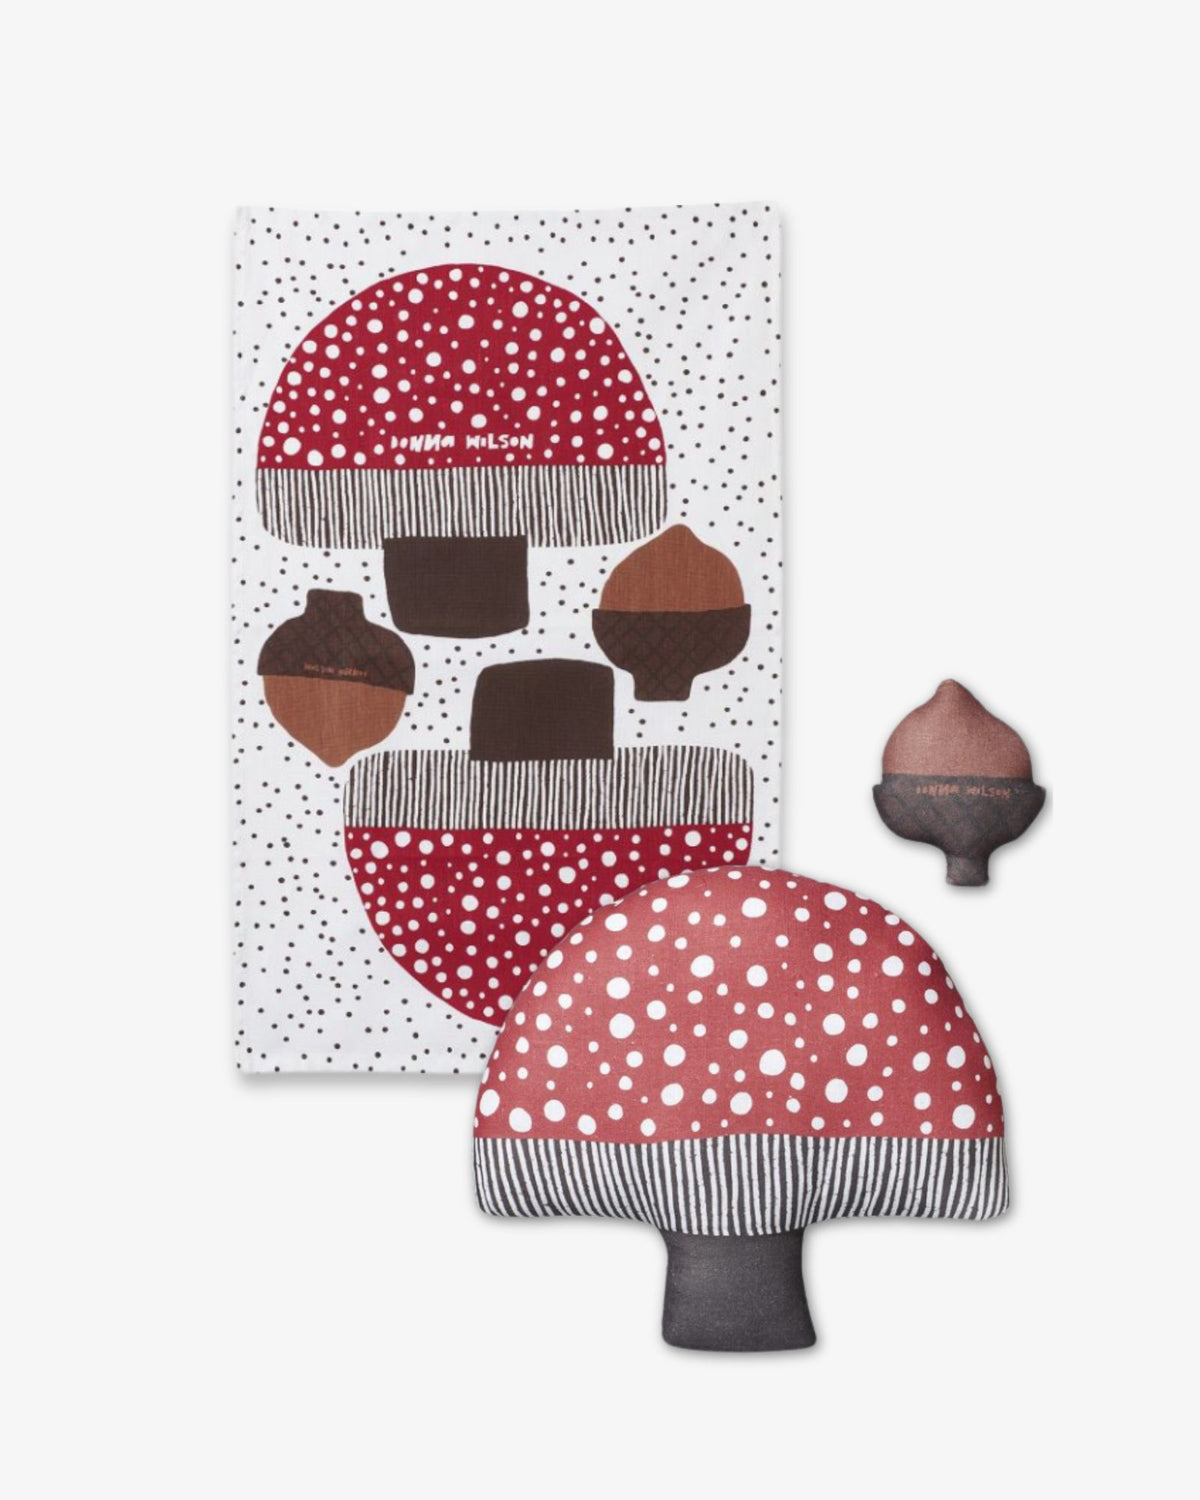 Mushroom Tea Towel Craft Kit by Donna Wilson